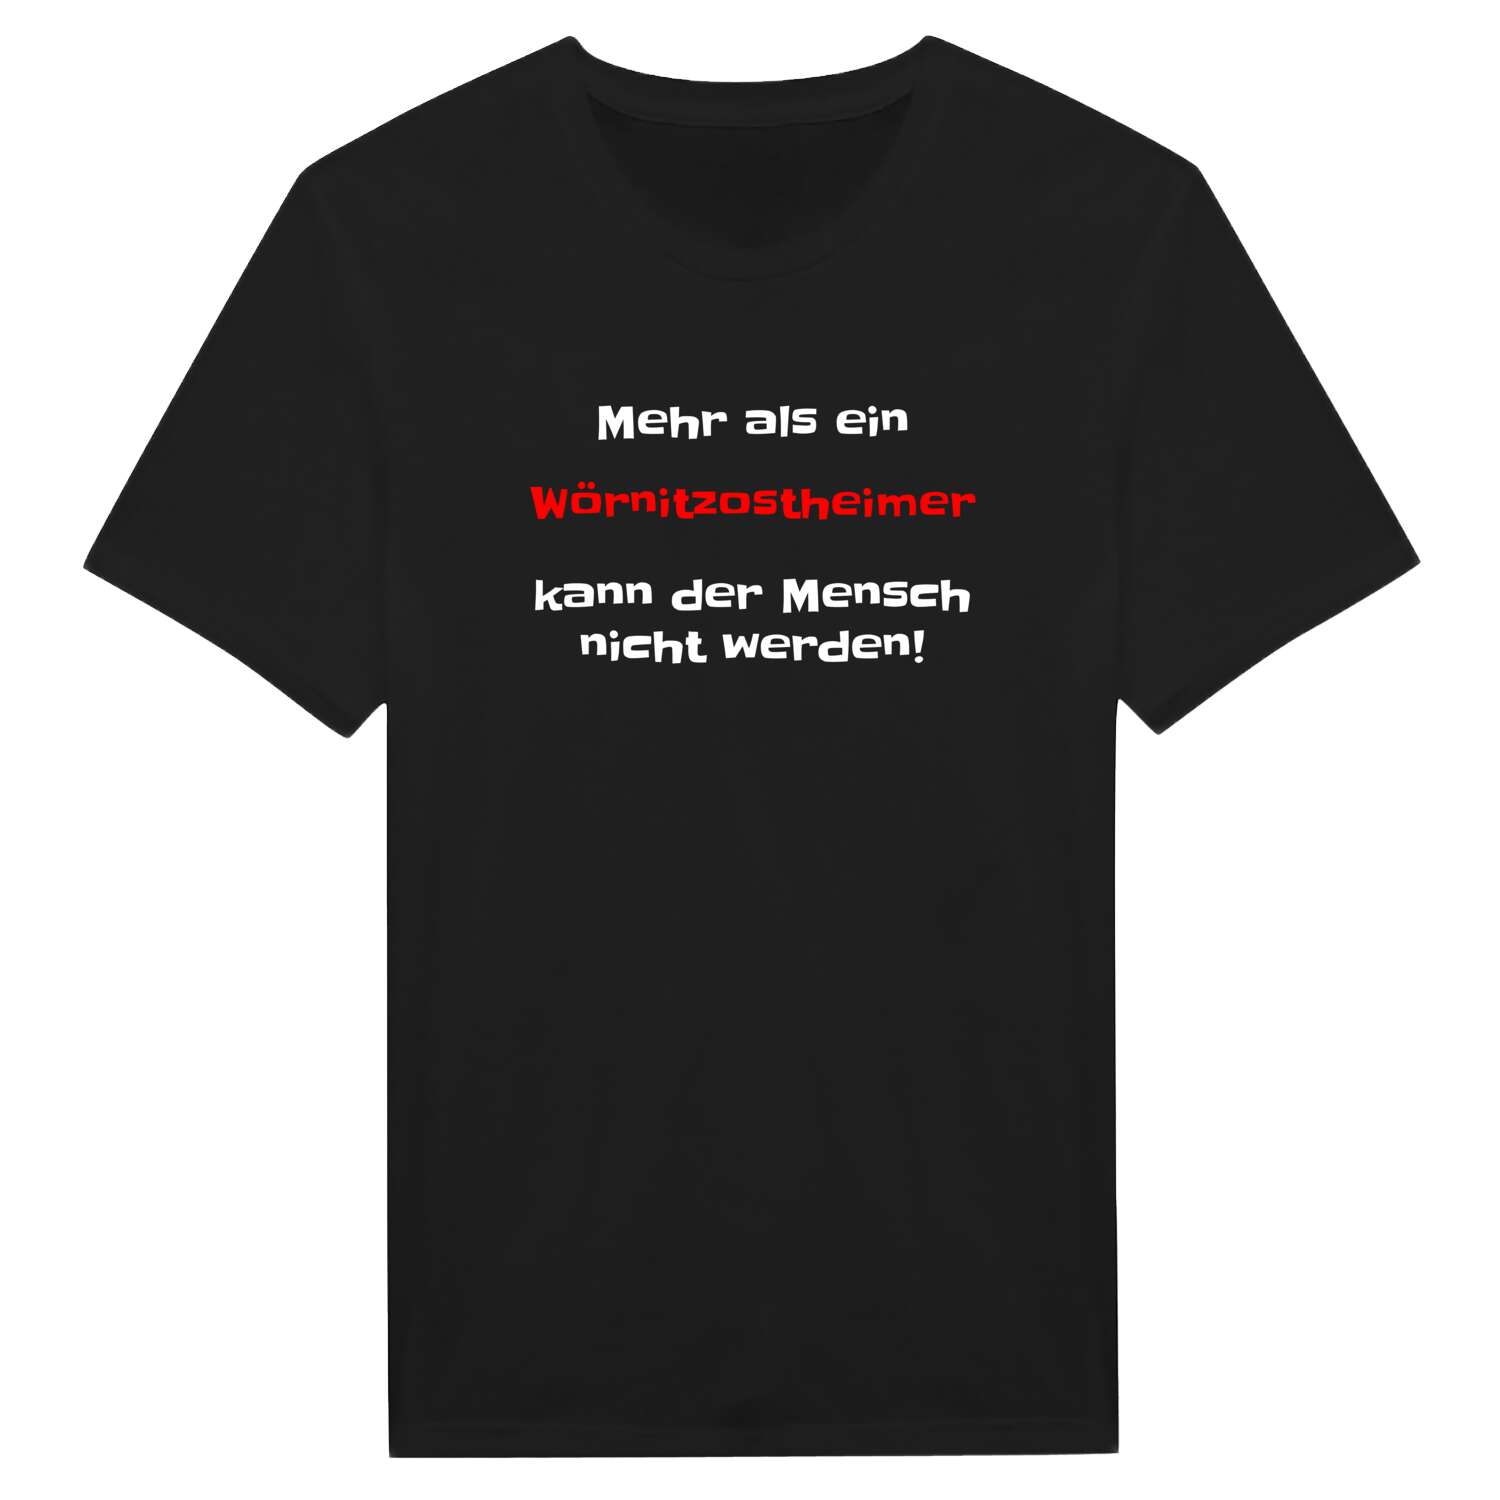 Wörnitzostheim T-Shirt »Mehr als ein«